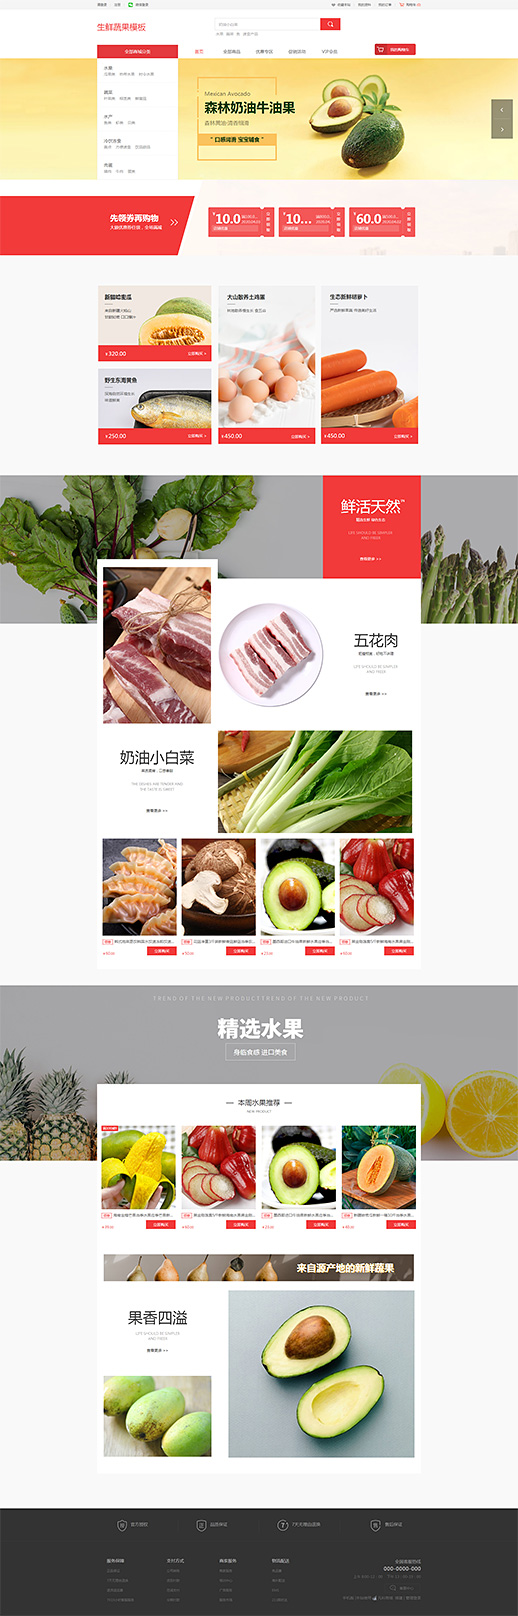 生鲜蔬果网站模板_水果店网站模板源码网站模板